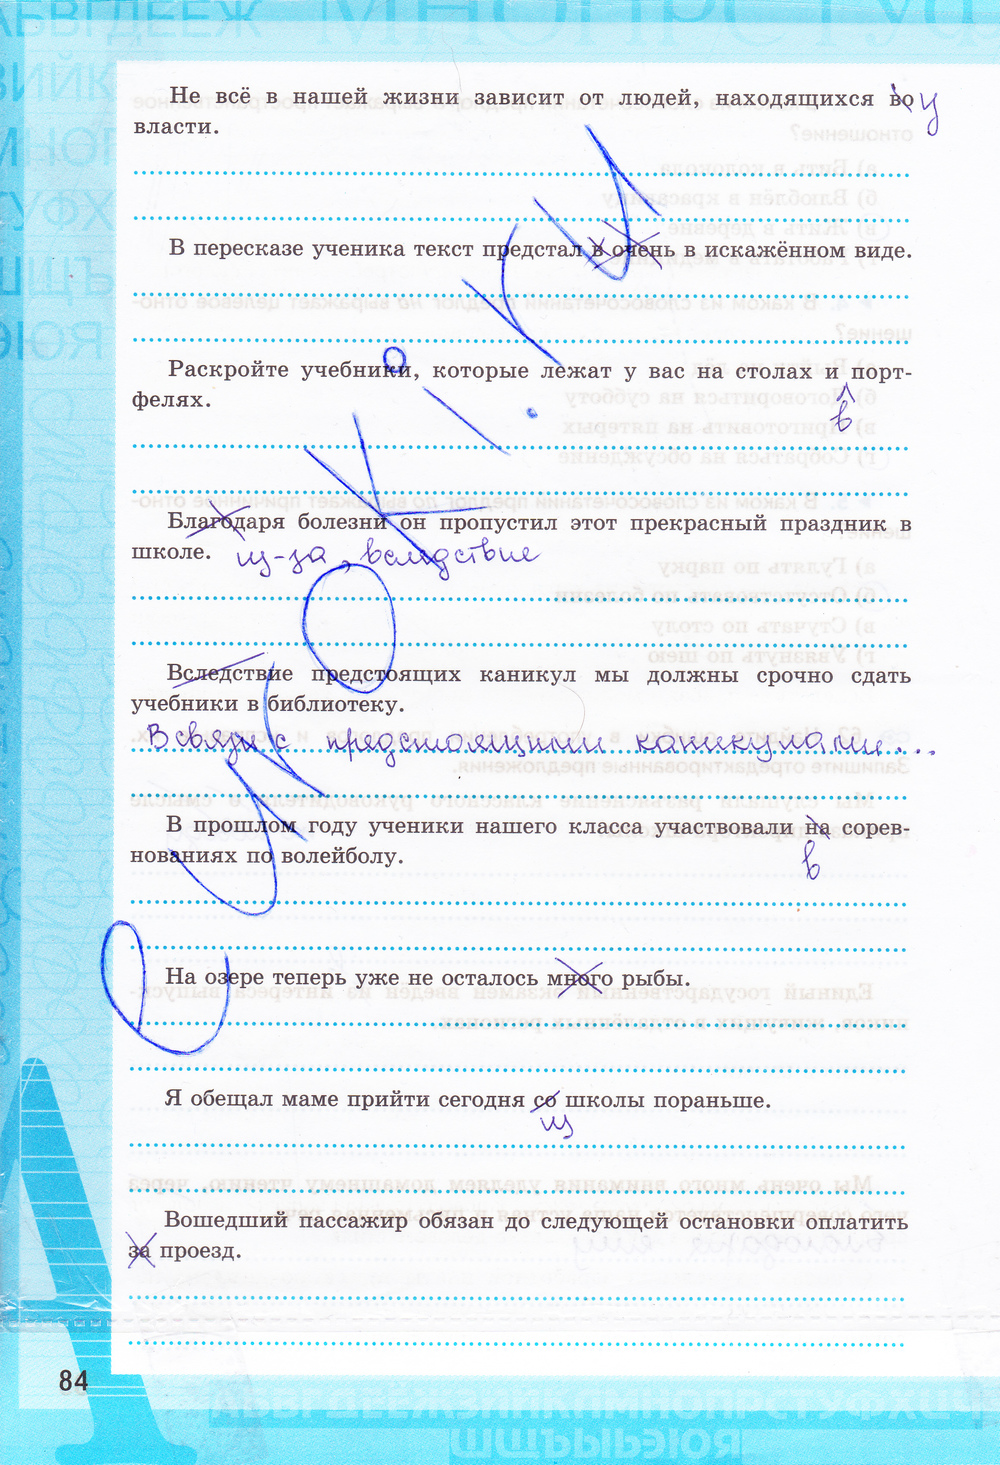 Страница (упражнение) 84 рабочей тетради. Страница 84 ГДЗ рабочая тетрадь по русскому языку 7 класс Ерохина